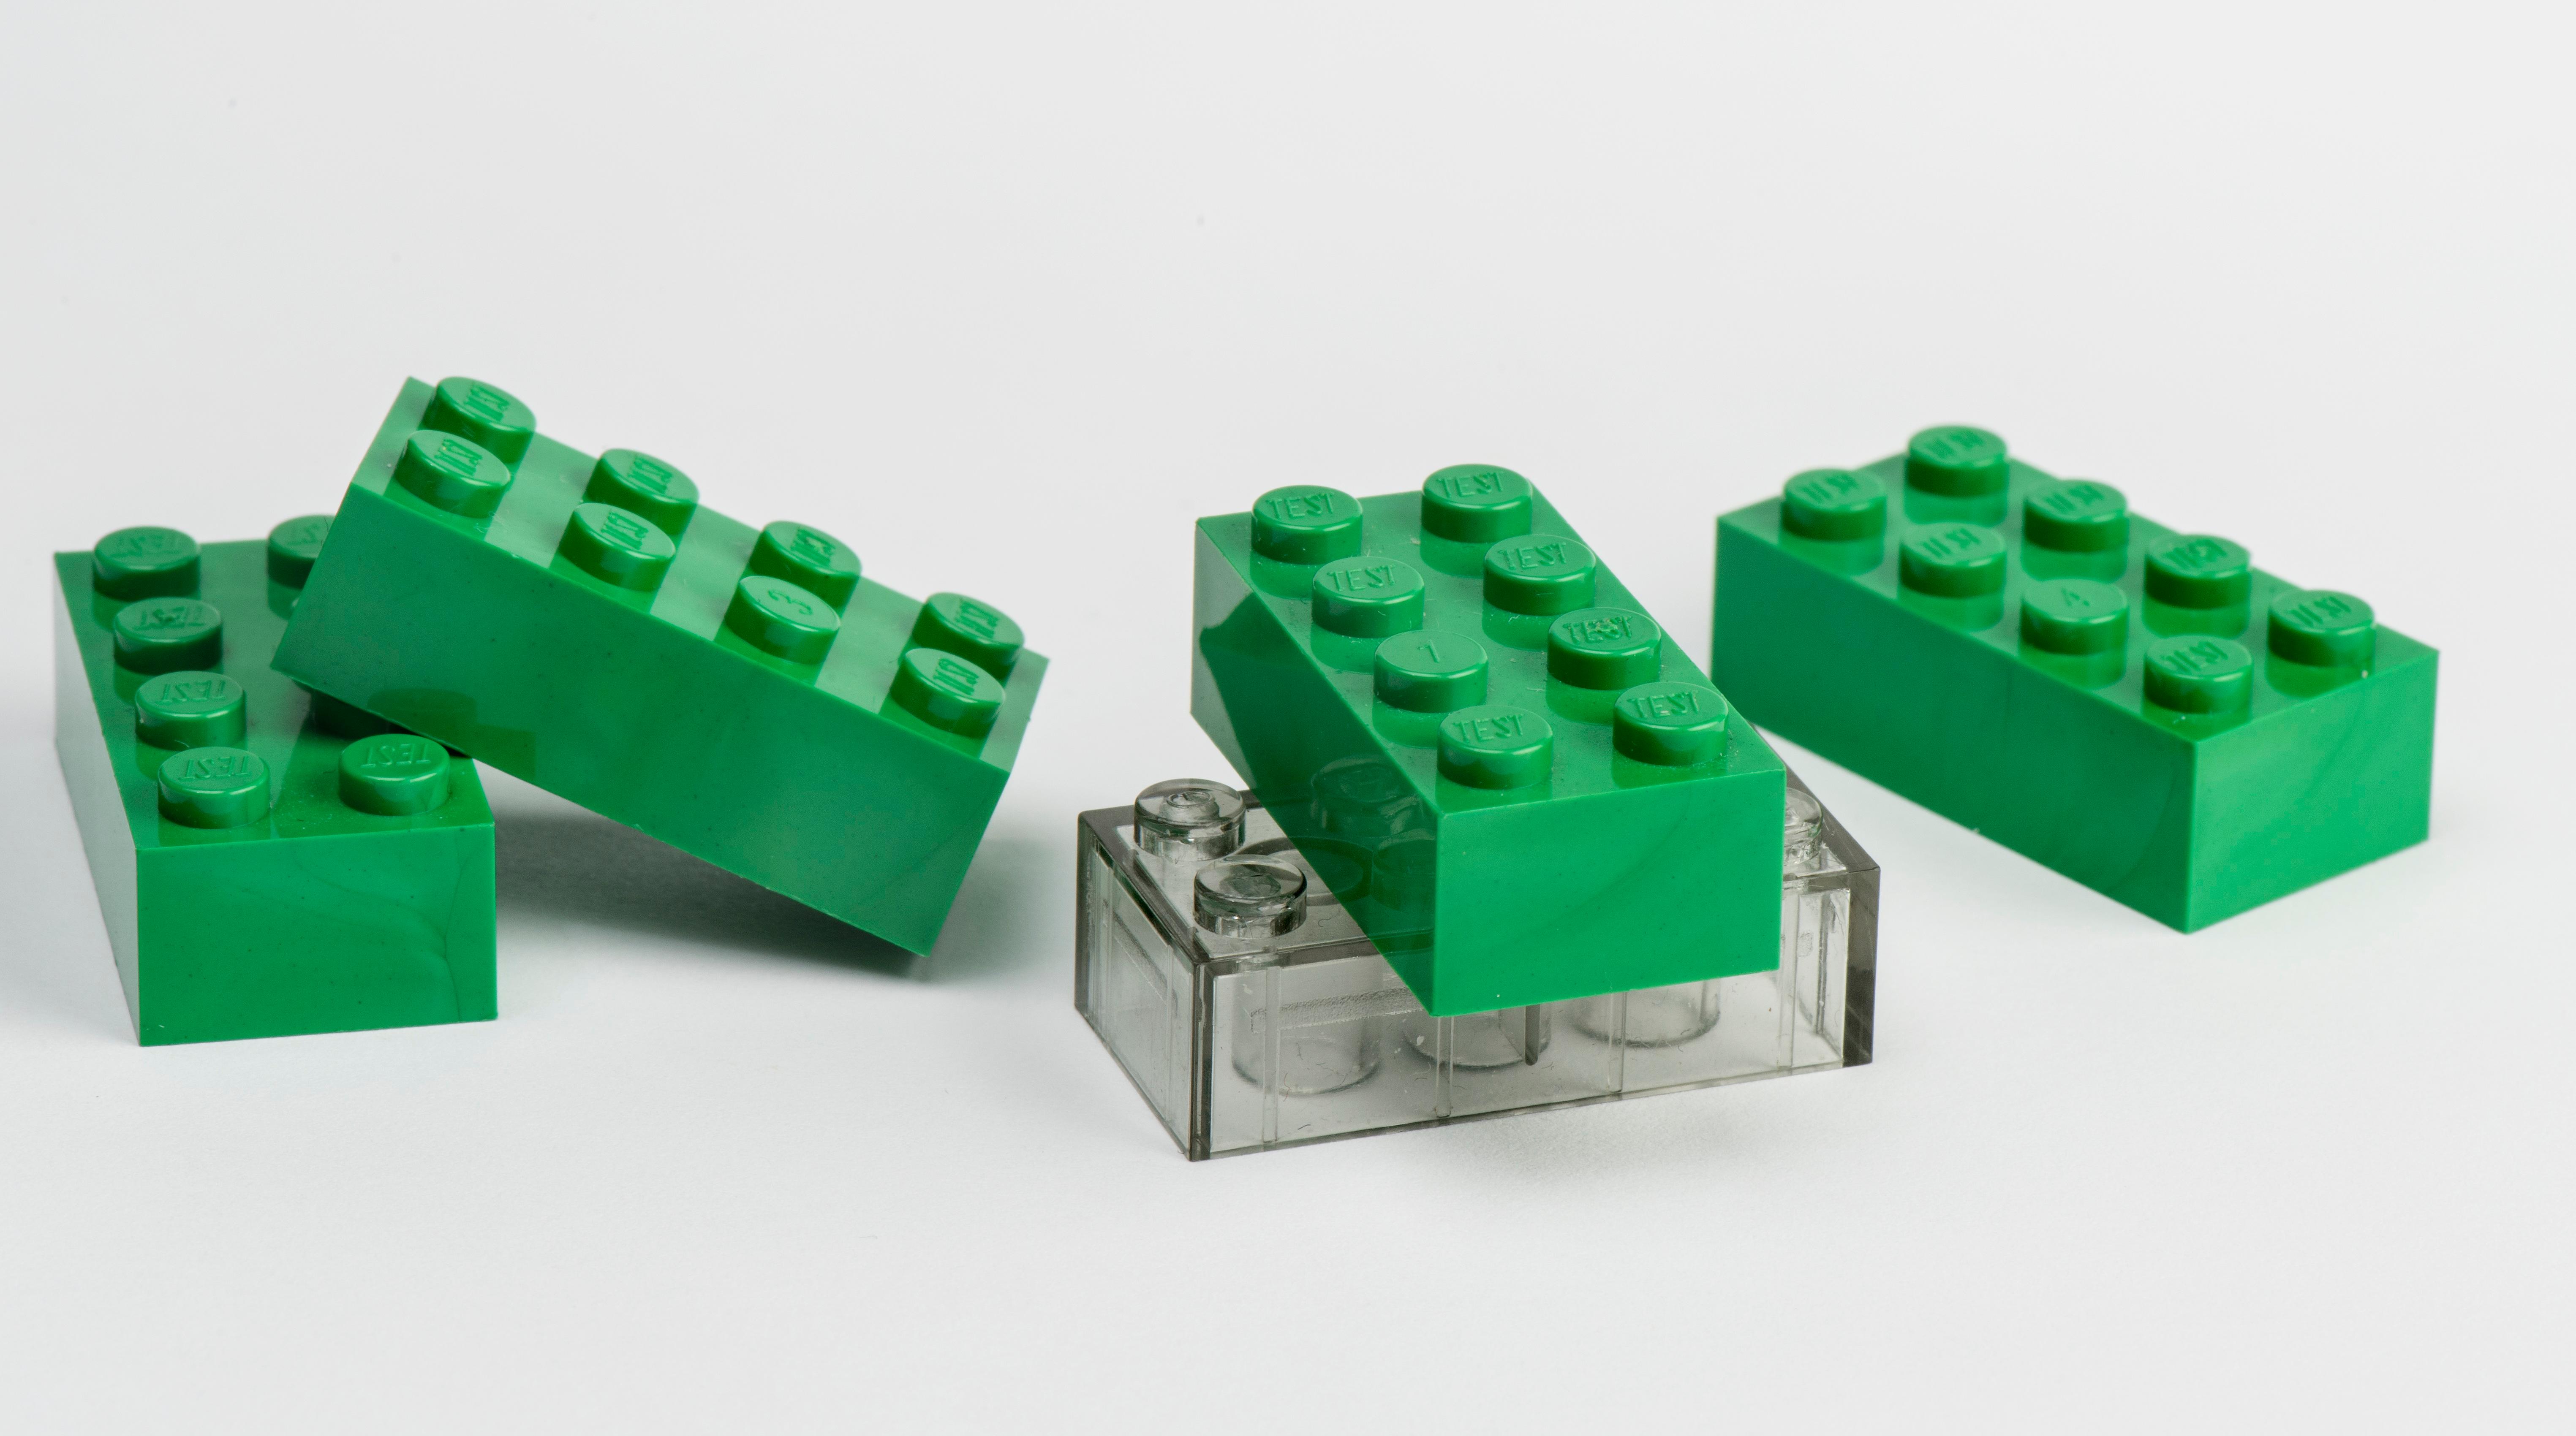 at tiltrække pålægge Array af Lego er 2 procent i mål med drømmen om grønne klodser